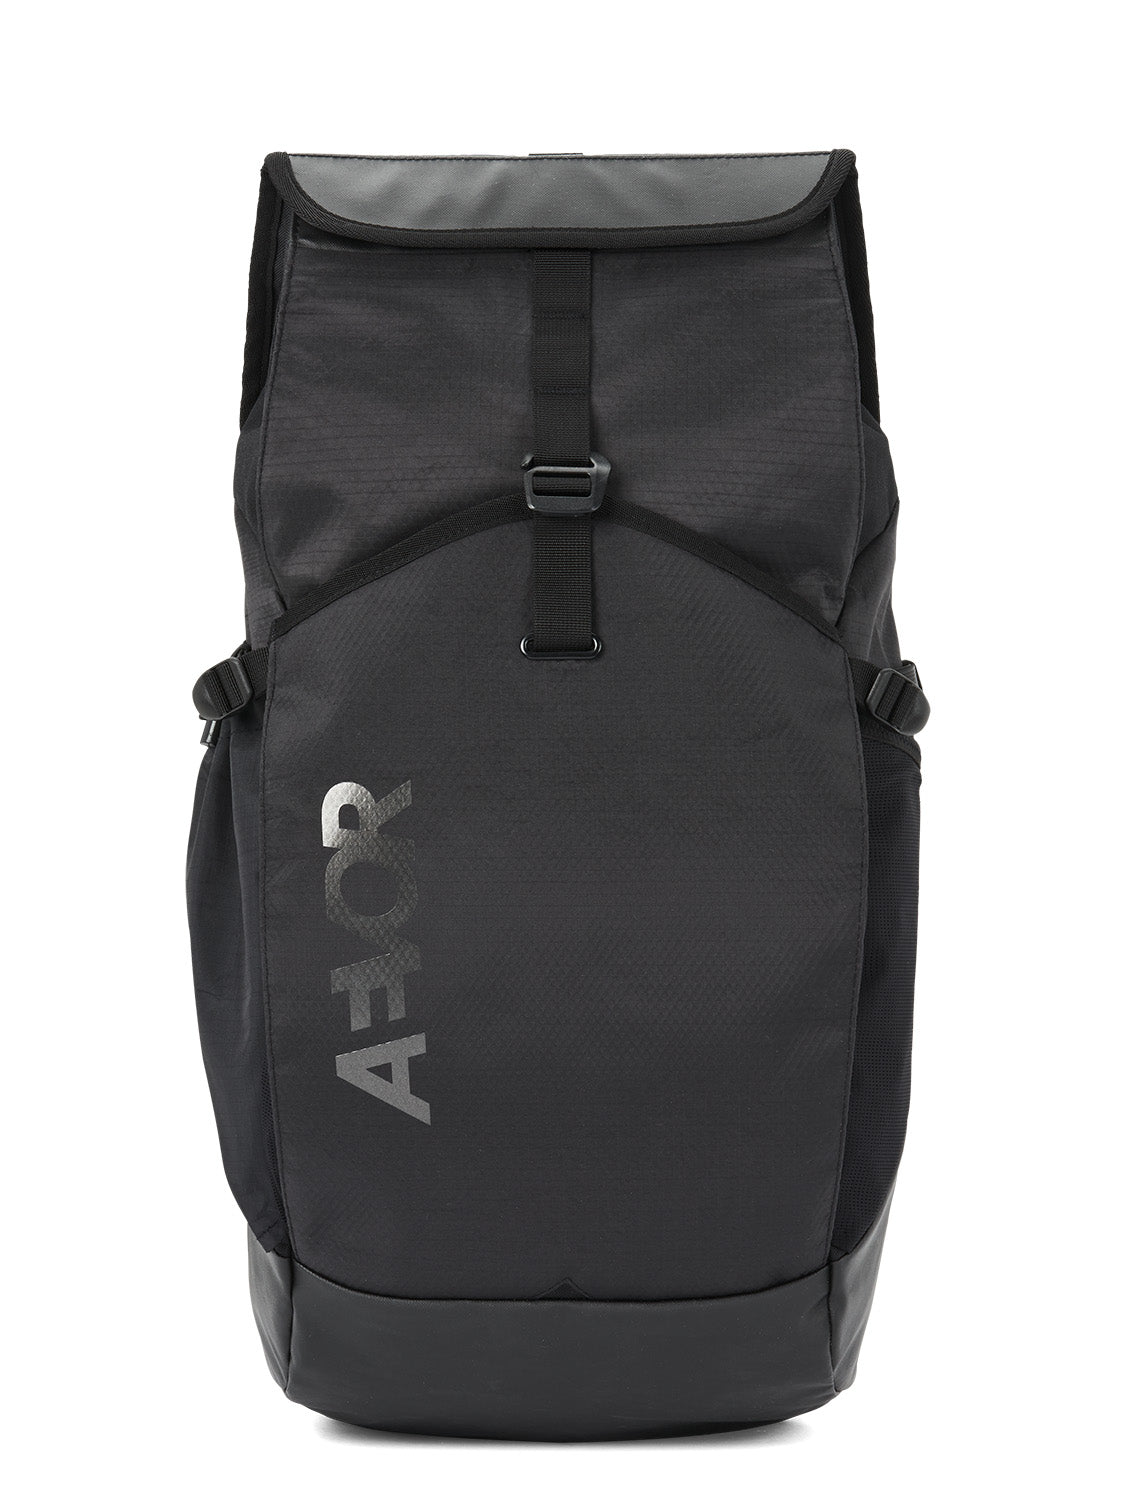 AEVOR-backpack-Rollpack-Proof-Black-front